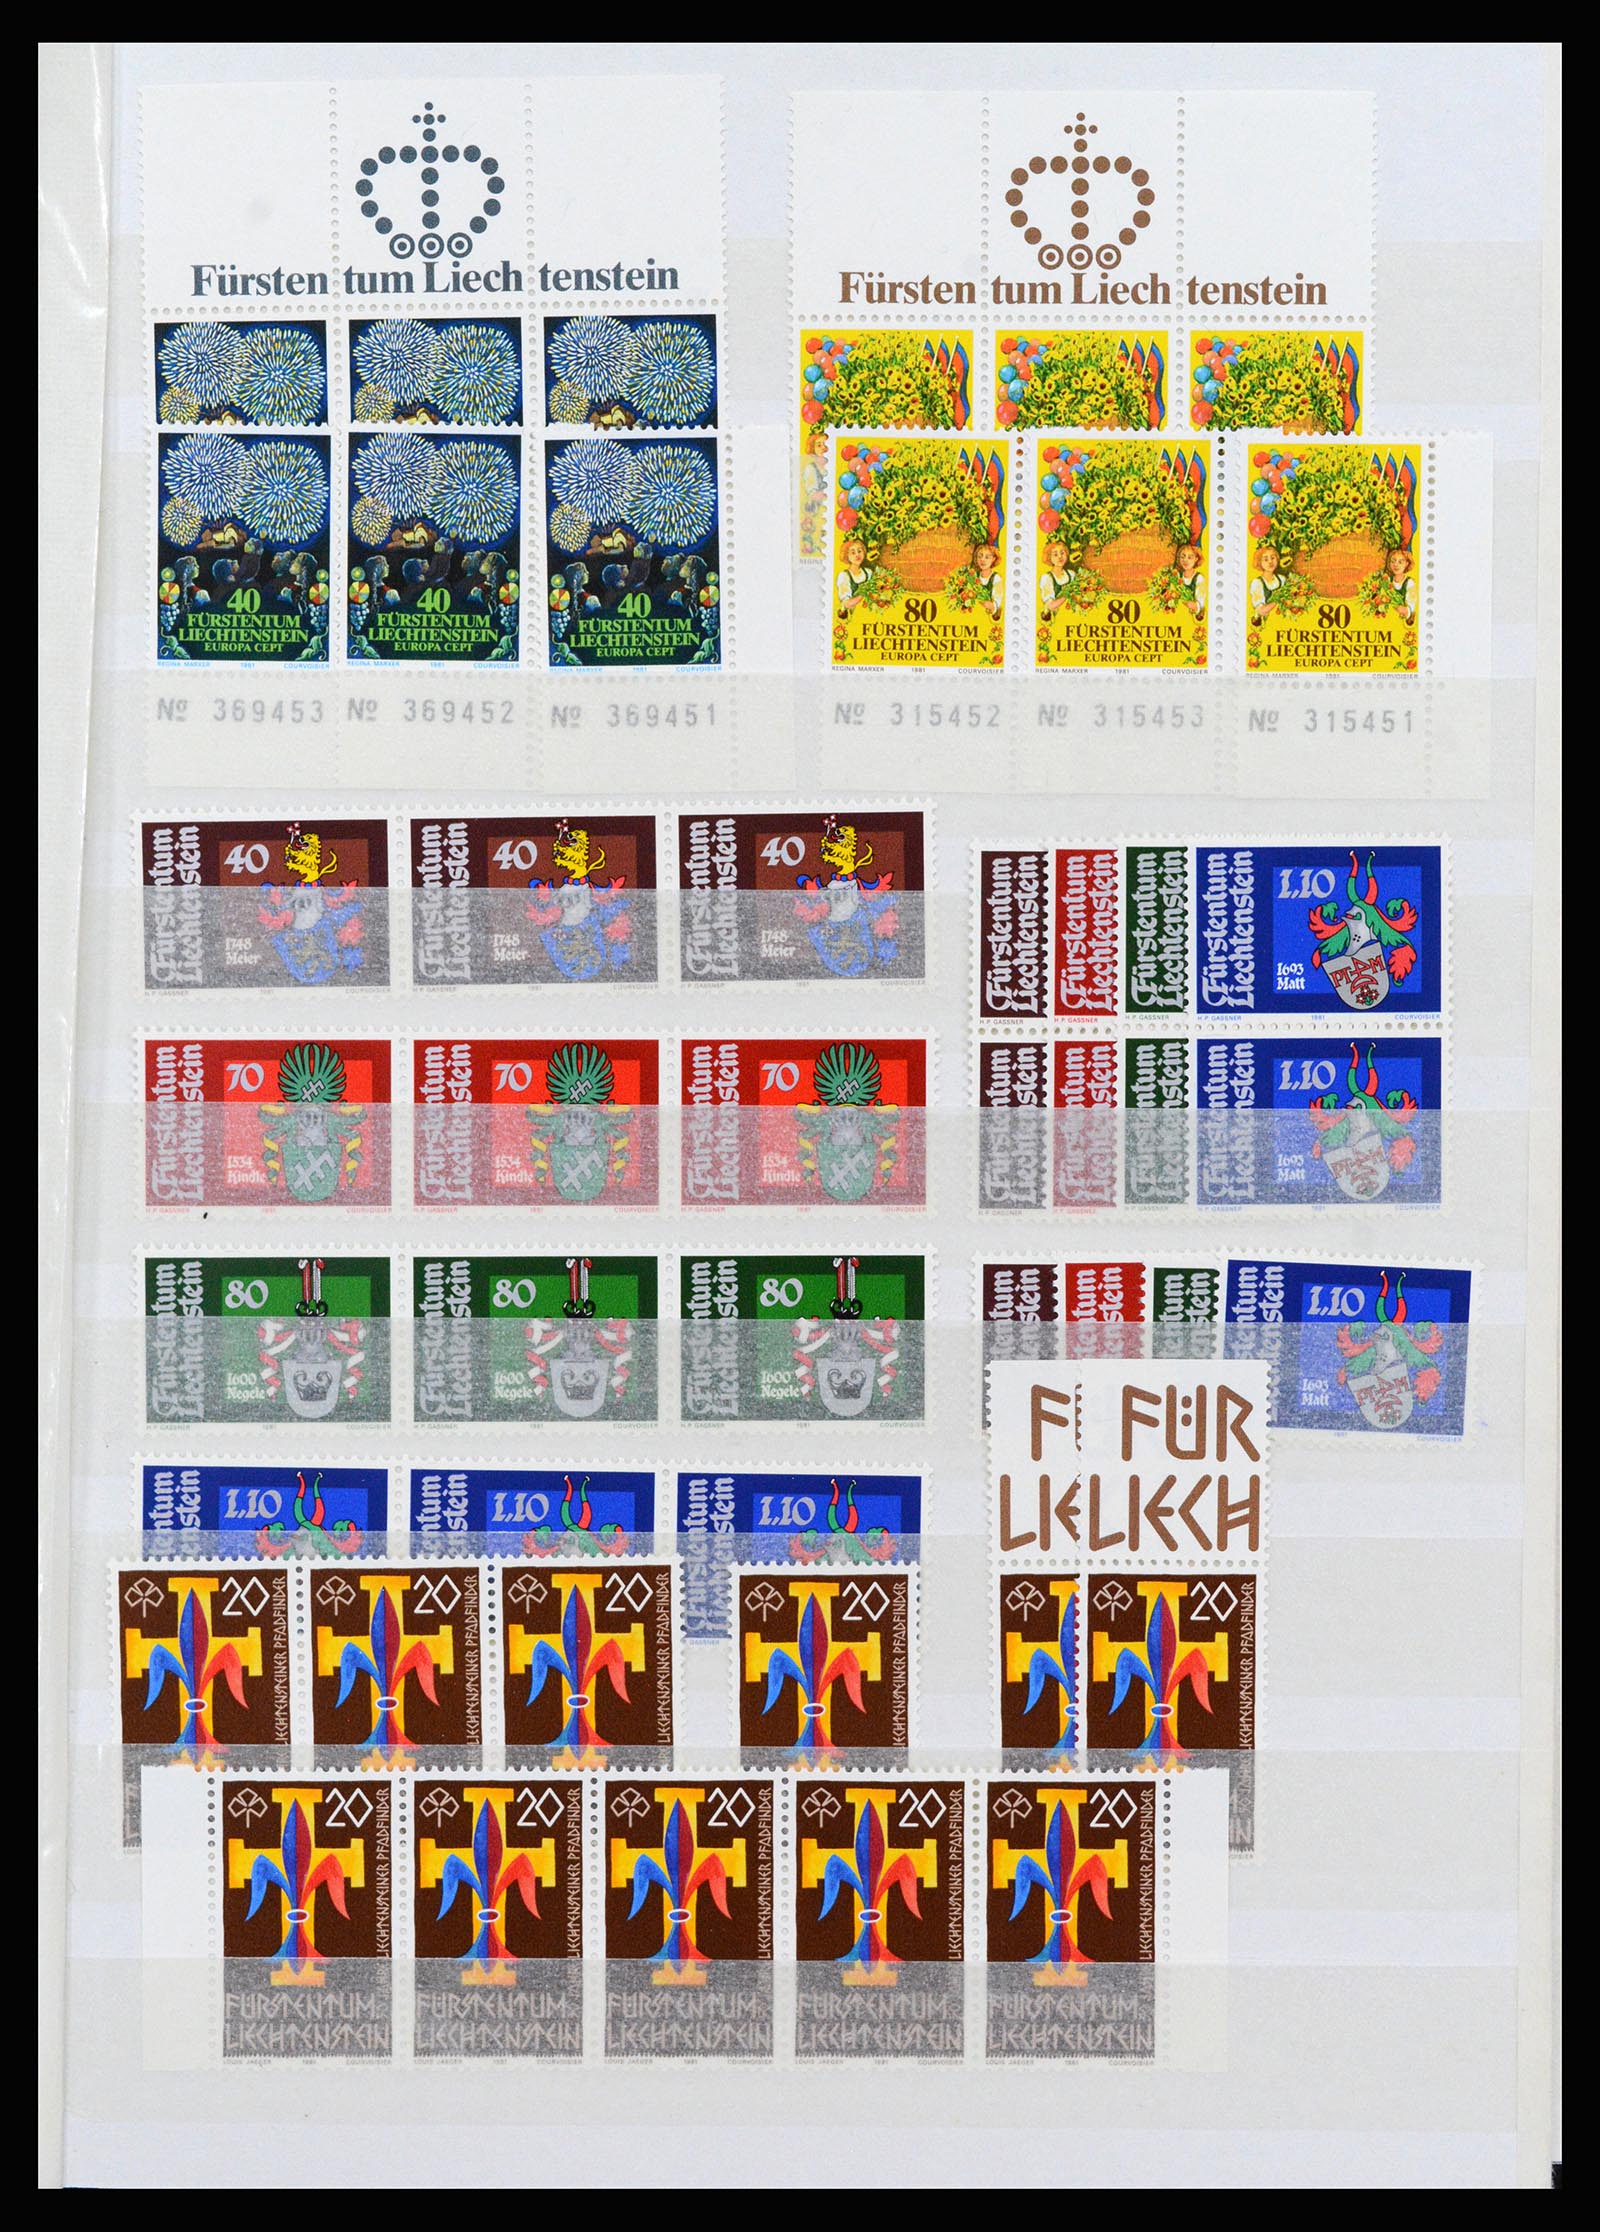 37261 065 - Stamp collection 37261 Liechtenstein 1961-1995.